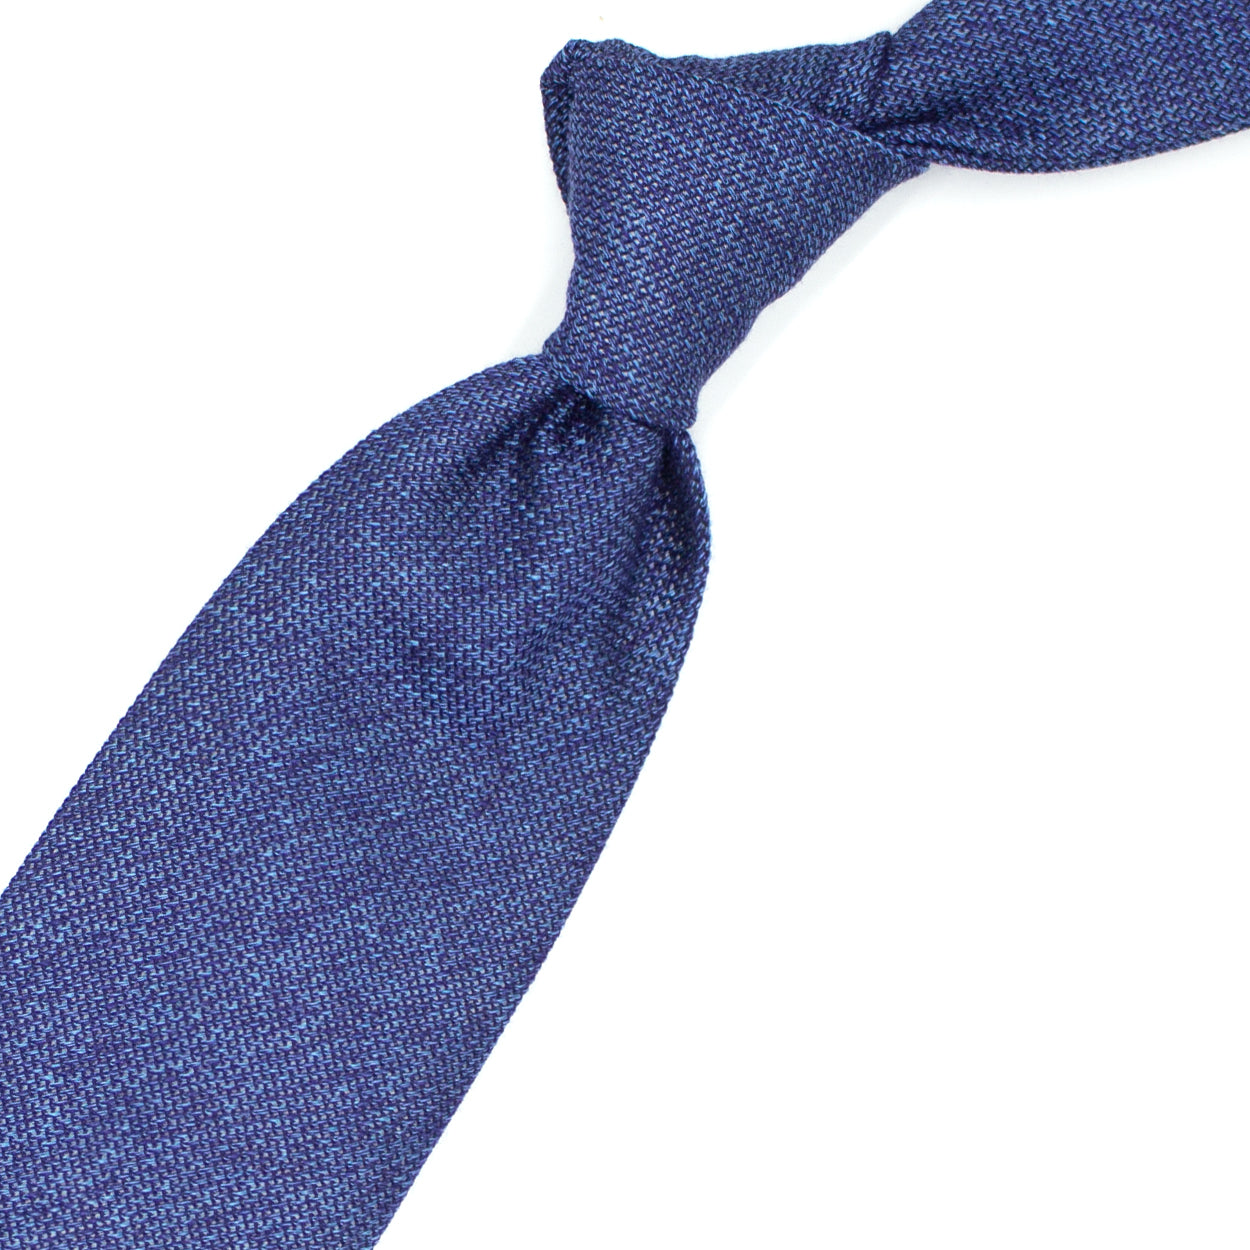 Blue textured tie